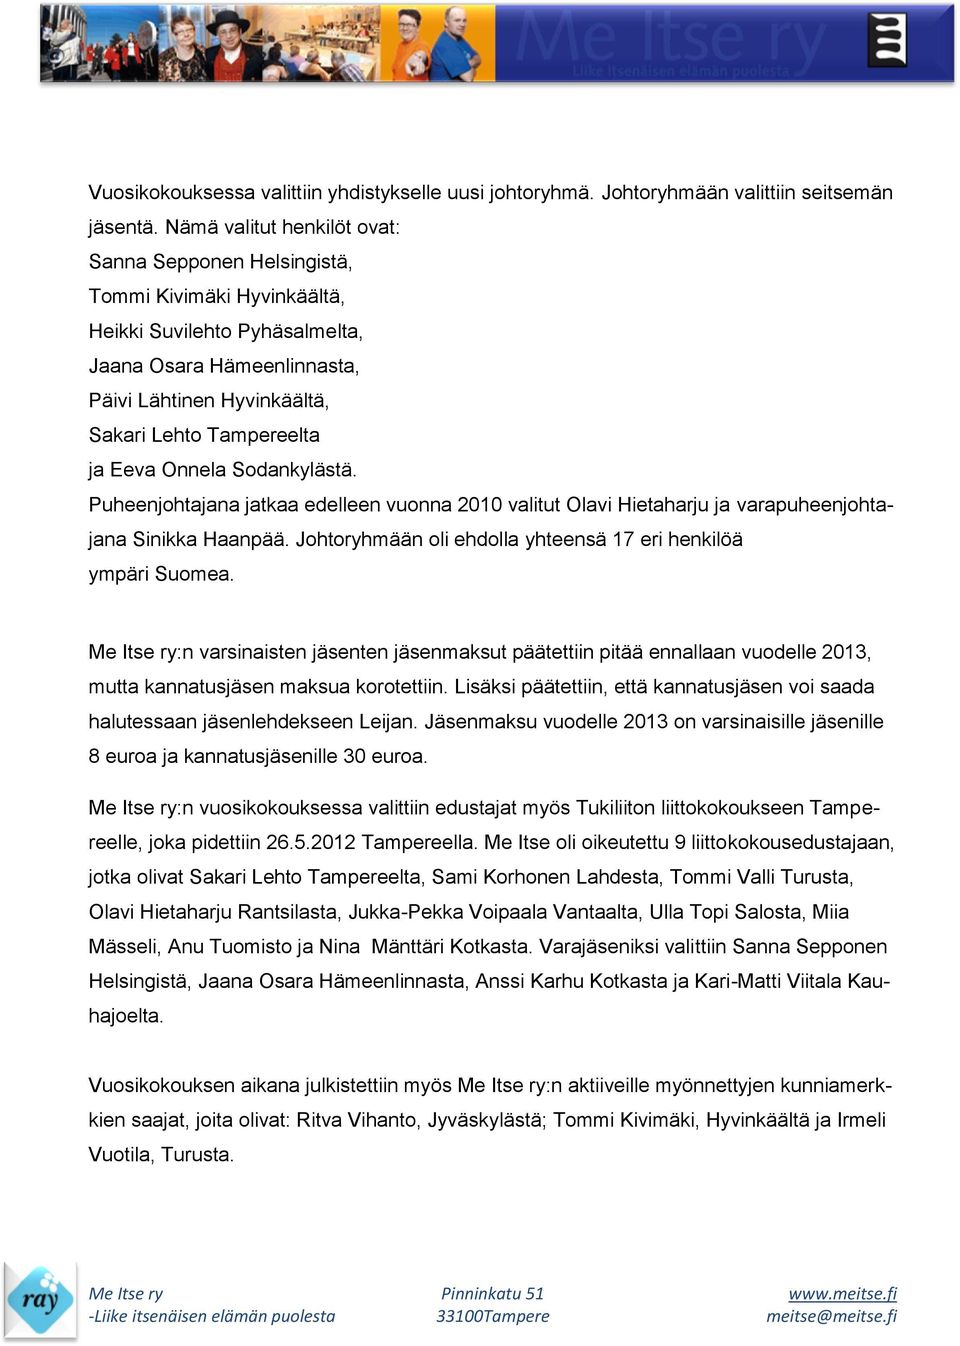 Eeva Onnela Sodankylästä. Puheenjohtajana jatkaa edelleen vuonna 2010 valitut Olavi Hietaharju ja varapuheenjohtajana Sinikka Haanpää. Johtoryhmään oli ehdolla yhteensä 17 eri henkilöä ympäri Suomea.